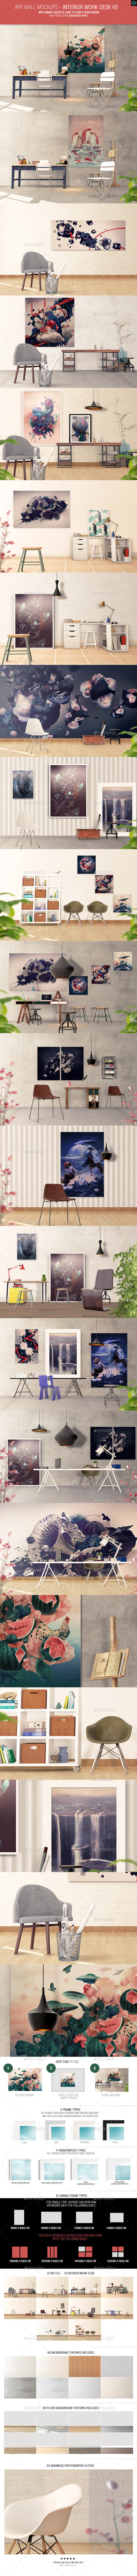 Art wall mockups interior work desk v2 preview